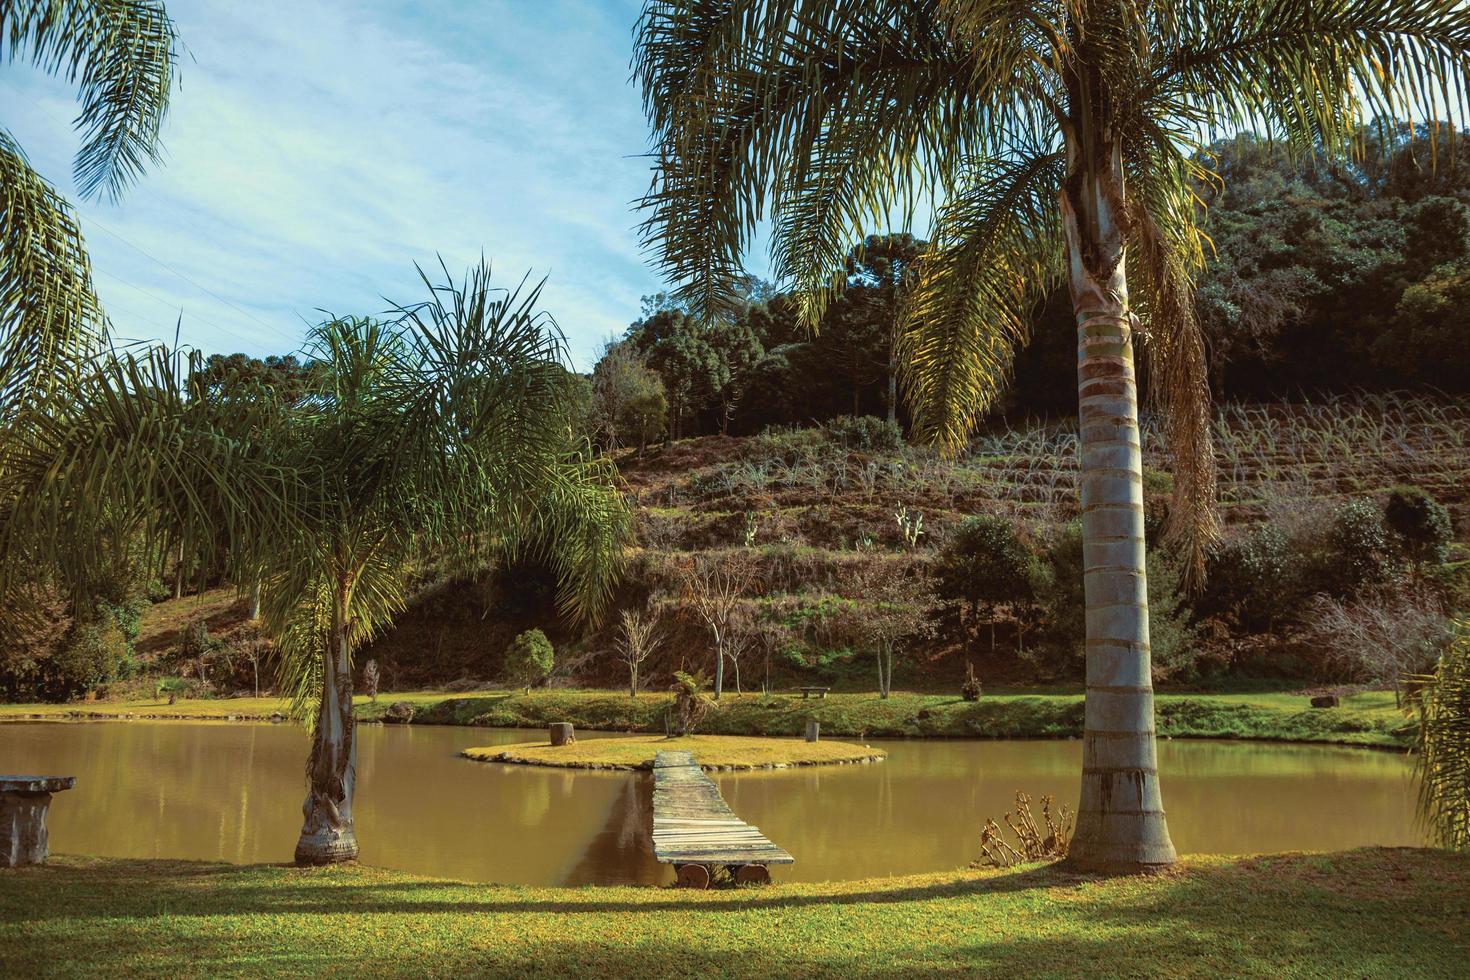 Holzsteg zu einer kleinen Insel im Teich von einem hübschen Garten mit Palmen in der Nähe von Bento Goncalves. eine freundliche Landstadt im Süden Brasiliens, die für ihre Weinproduktion bekannt ist. retuschiertes Foto. foto